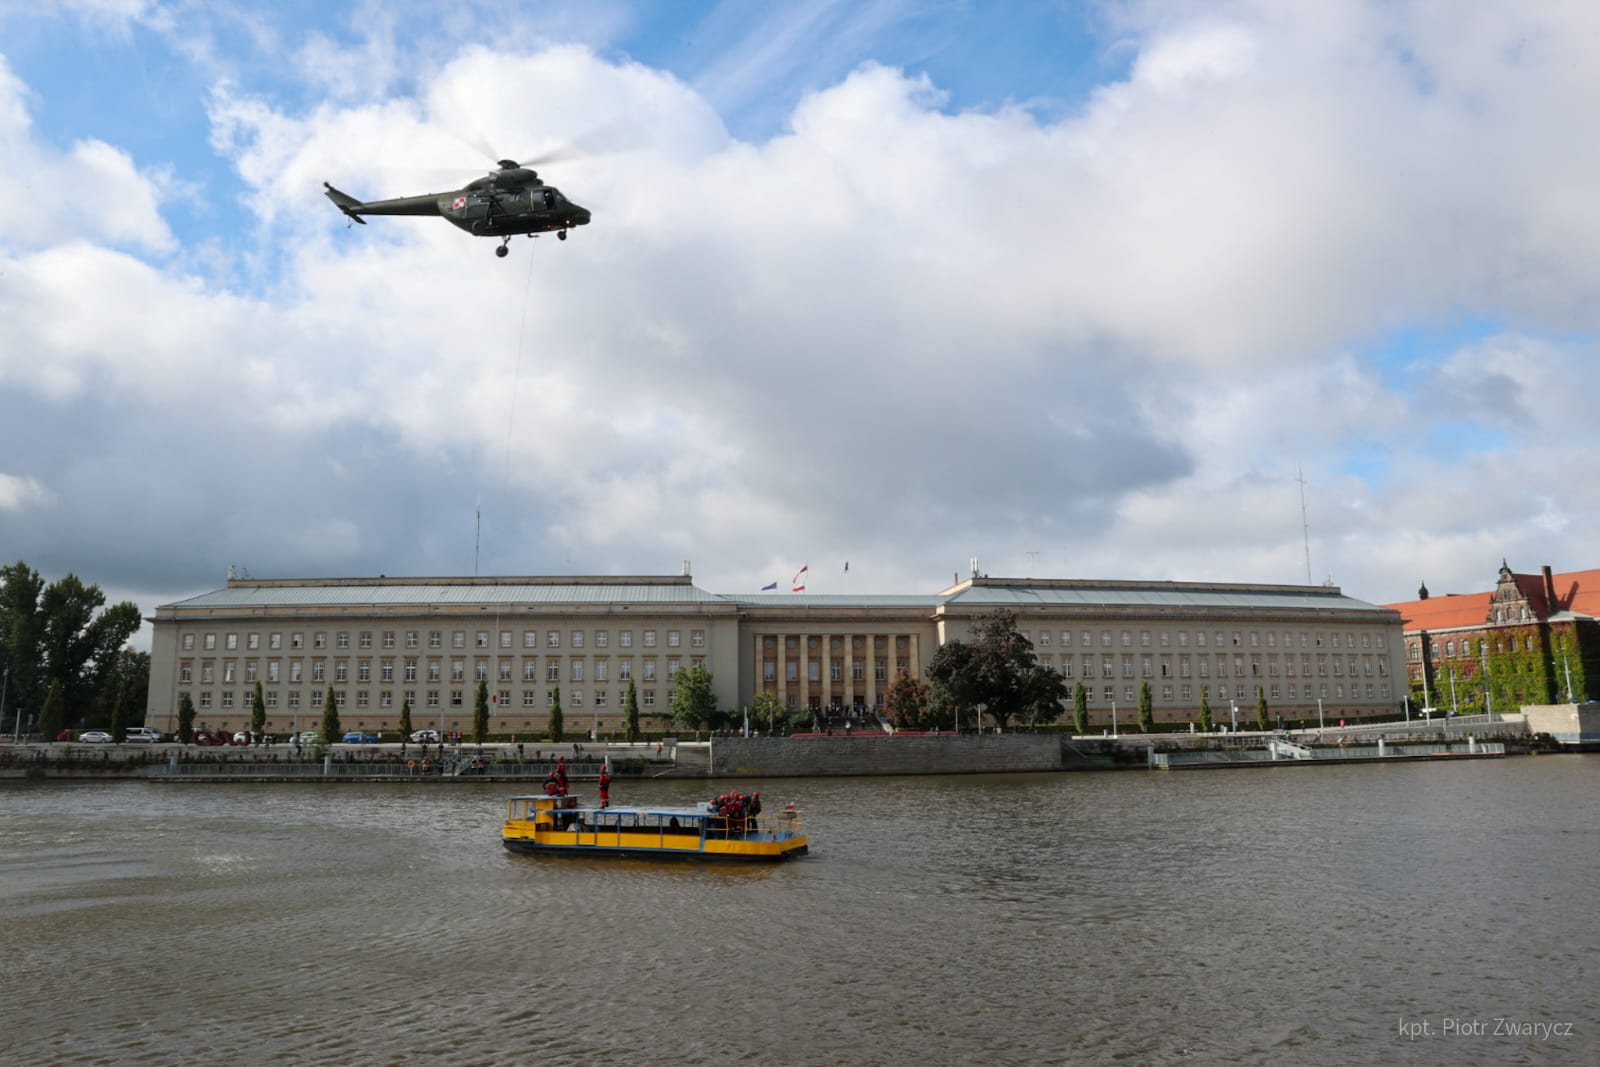 Helikopter nad rzeką Odrą. Na rzece widoczna barka